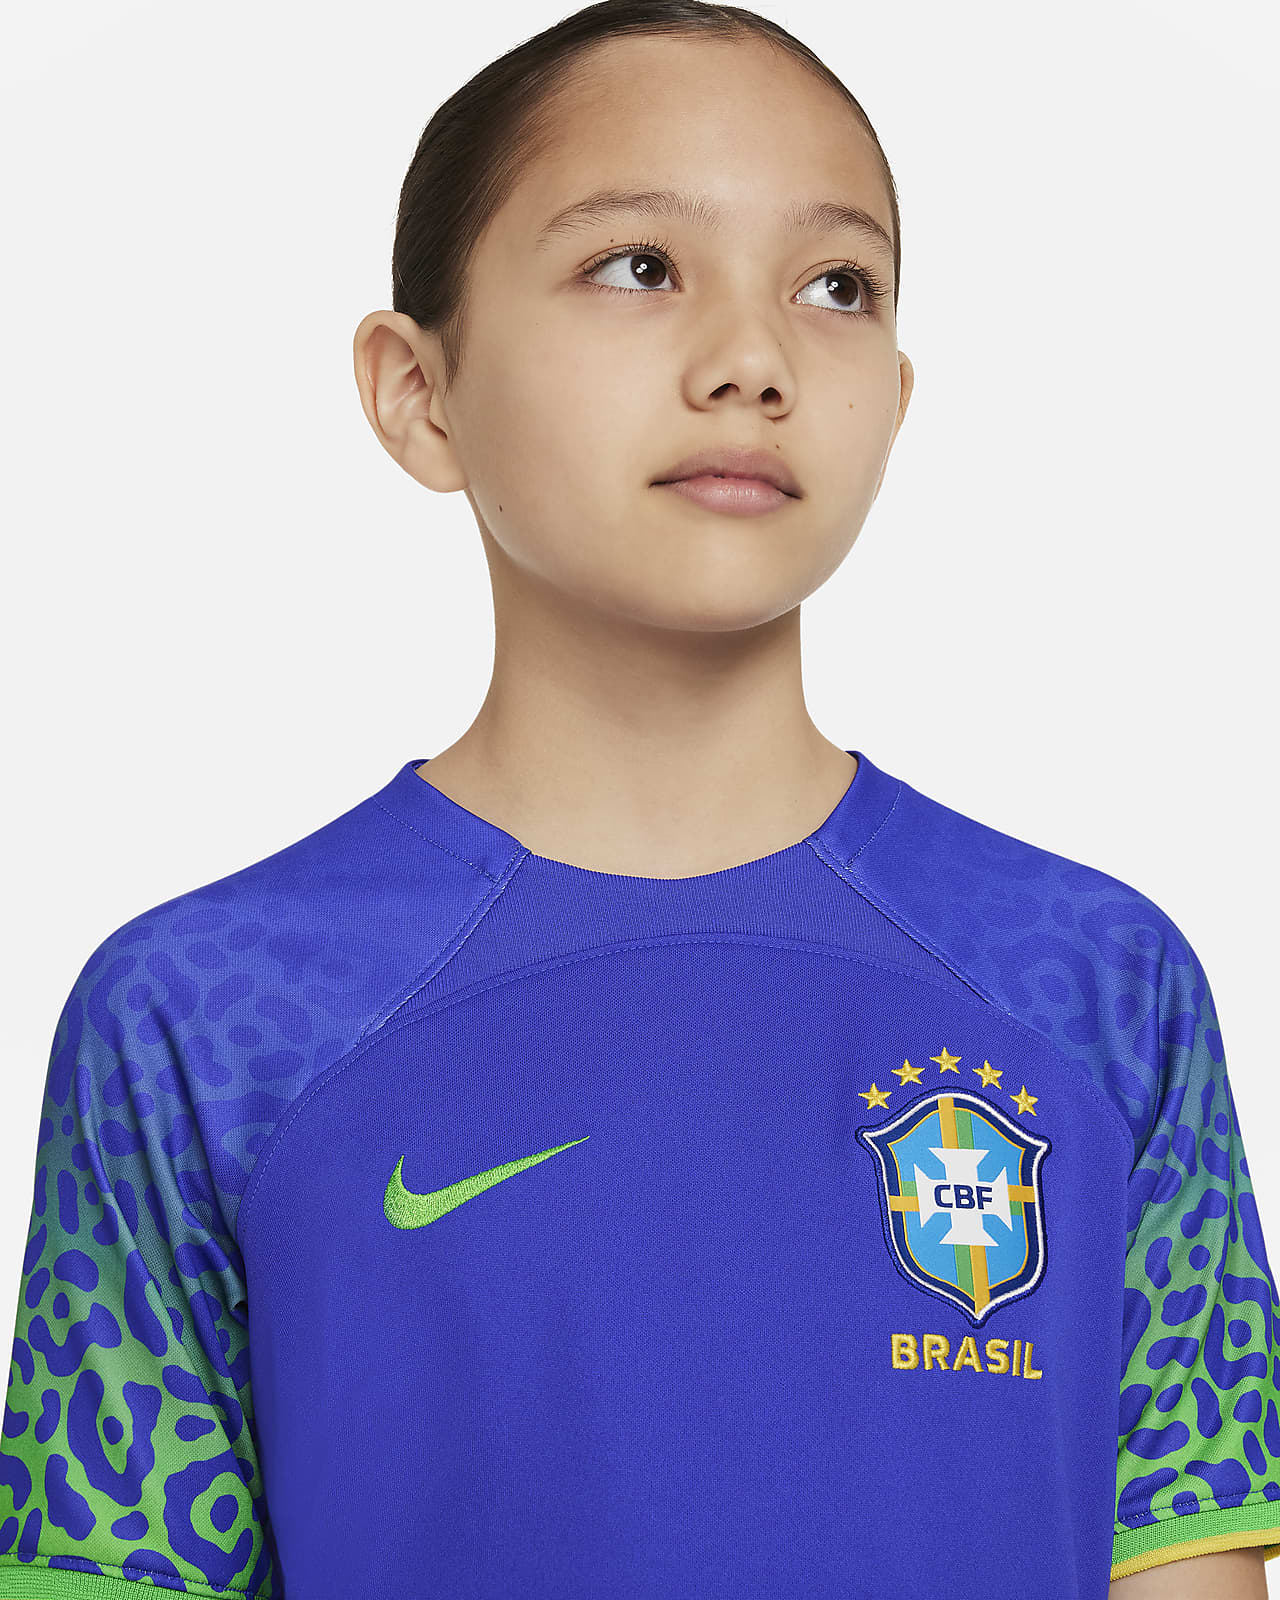 Brazilië Uit Nike voetbalshirt voor kids. Nike NL